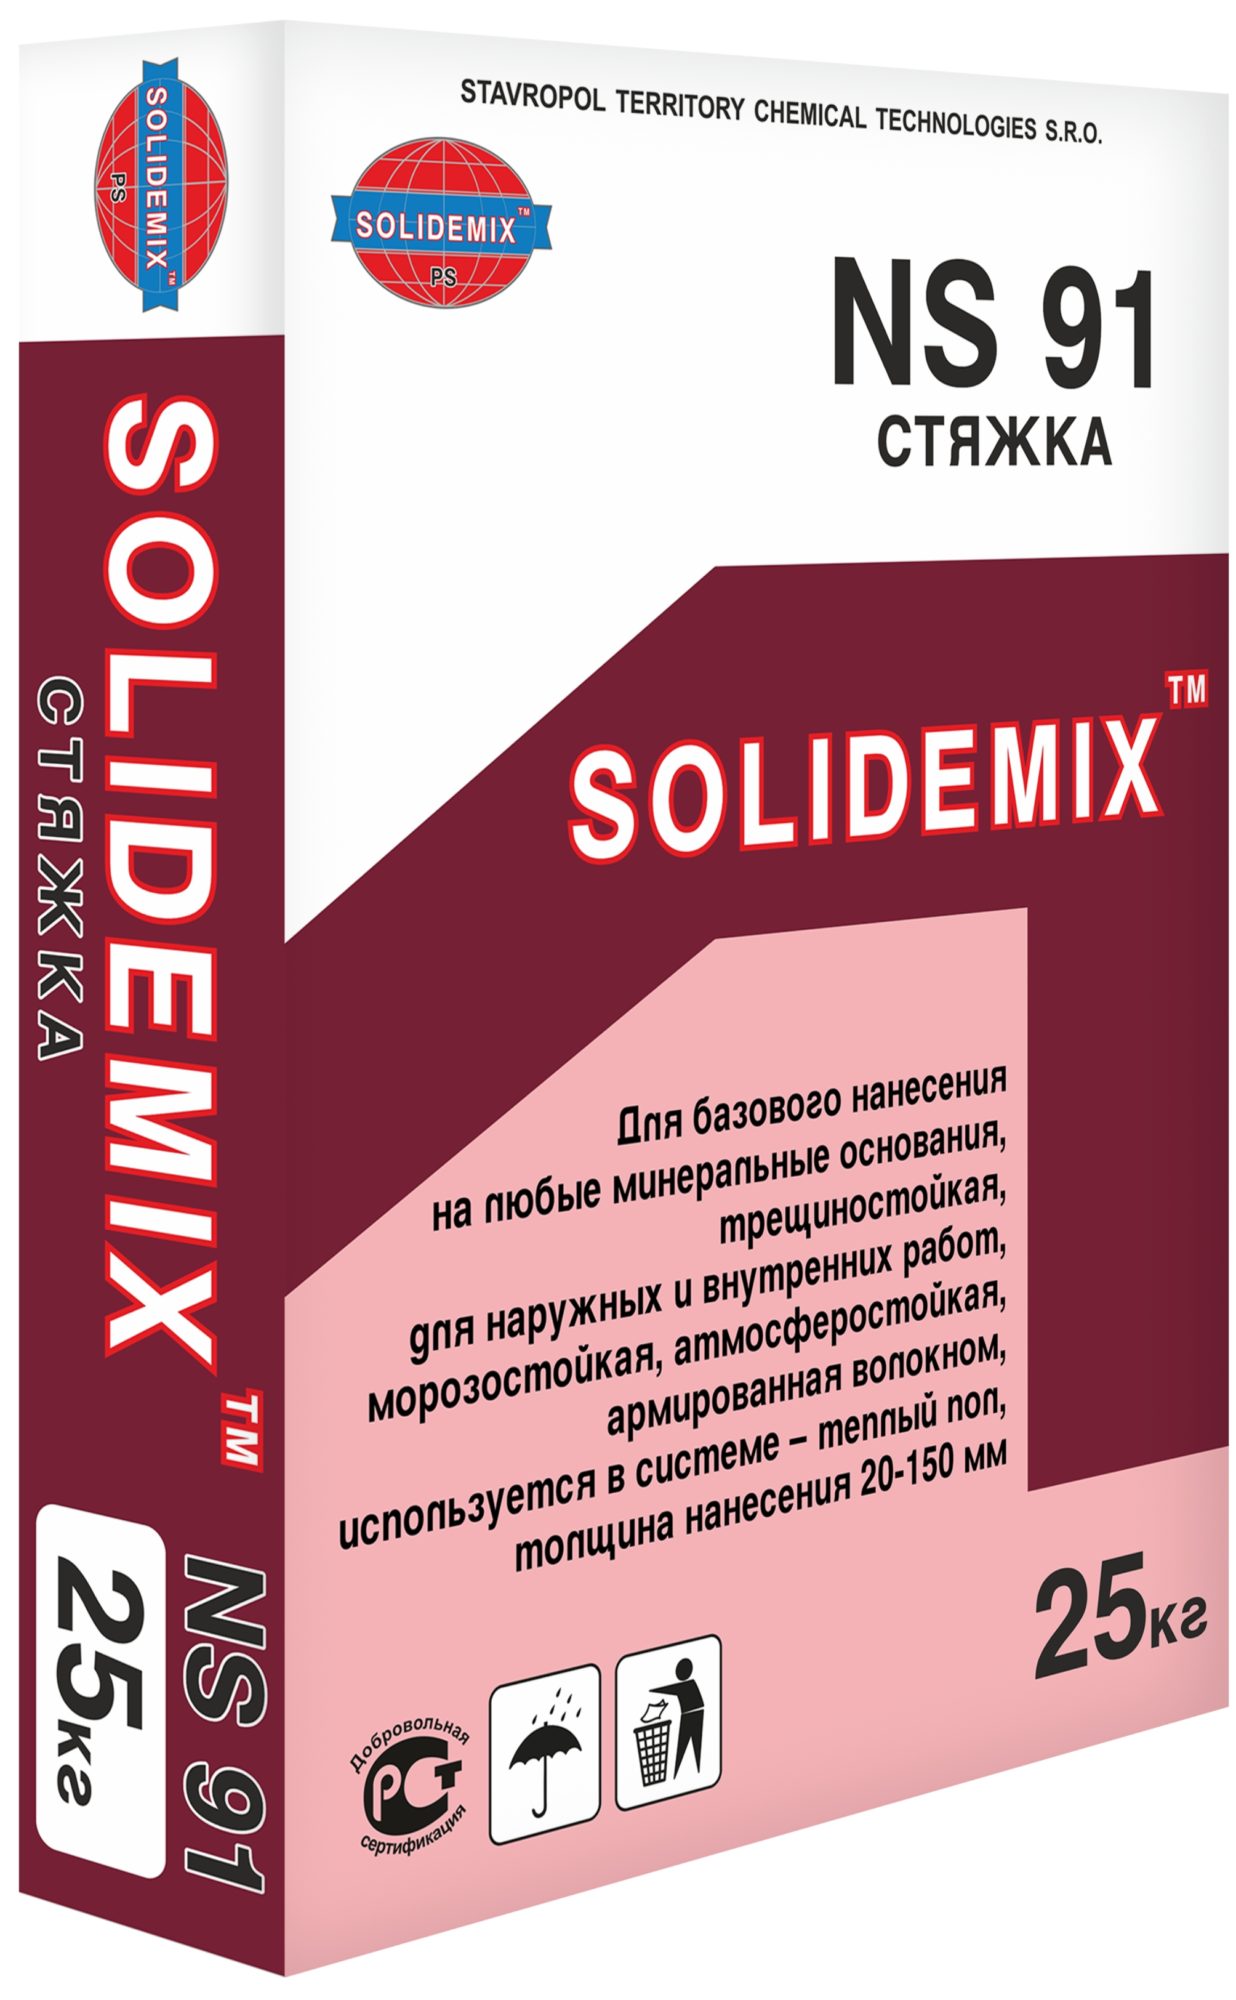 Купить СТЯЖКА NS 91 от SOLIDEMIX